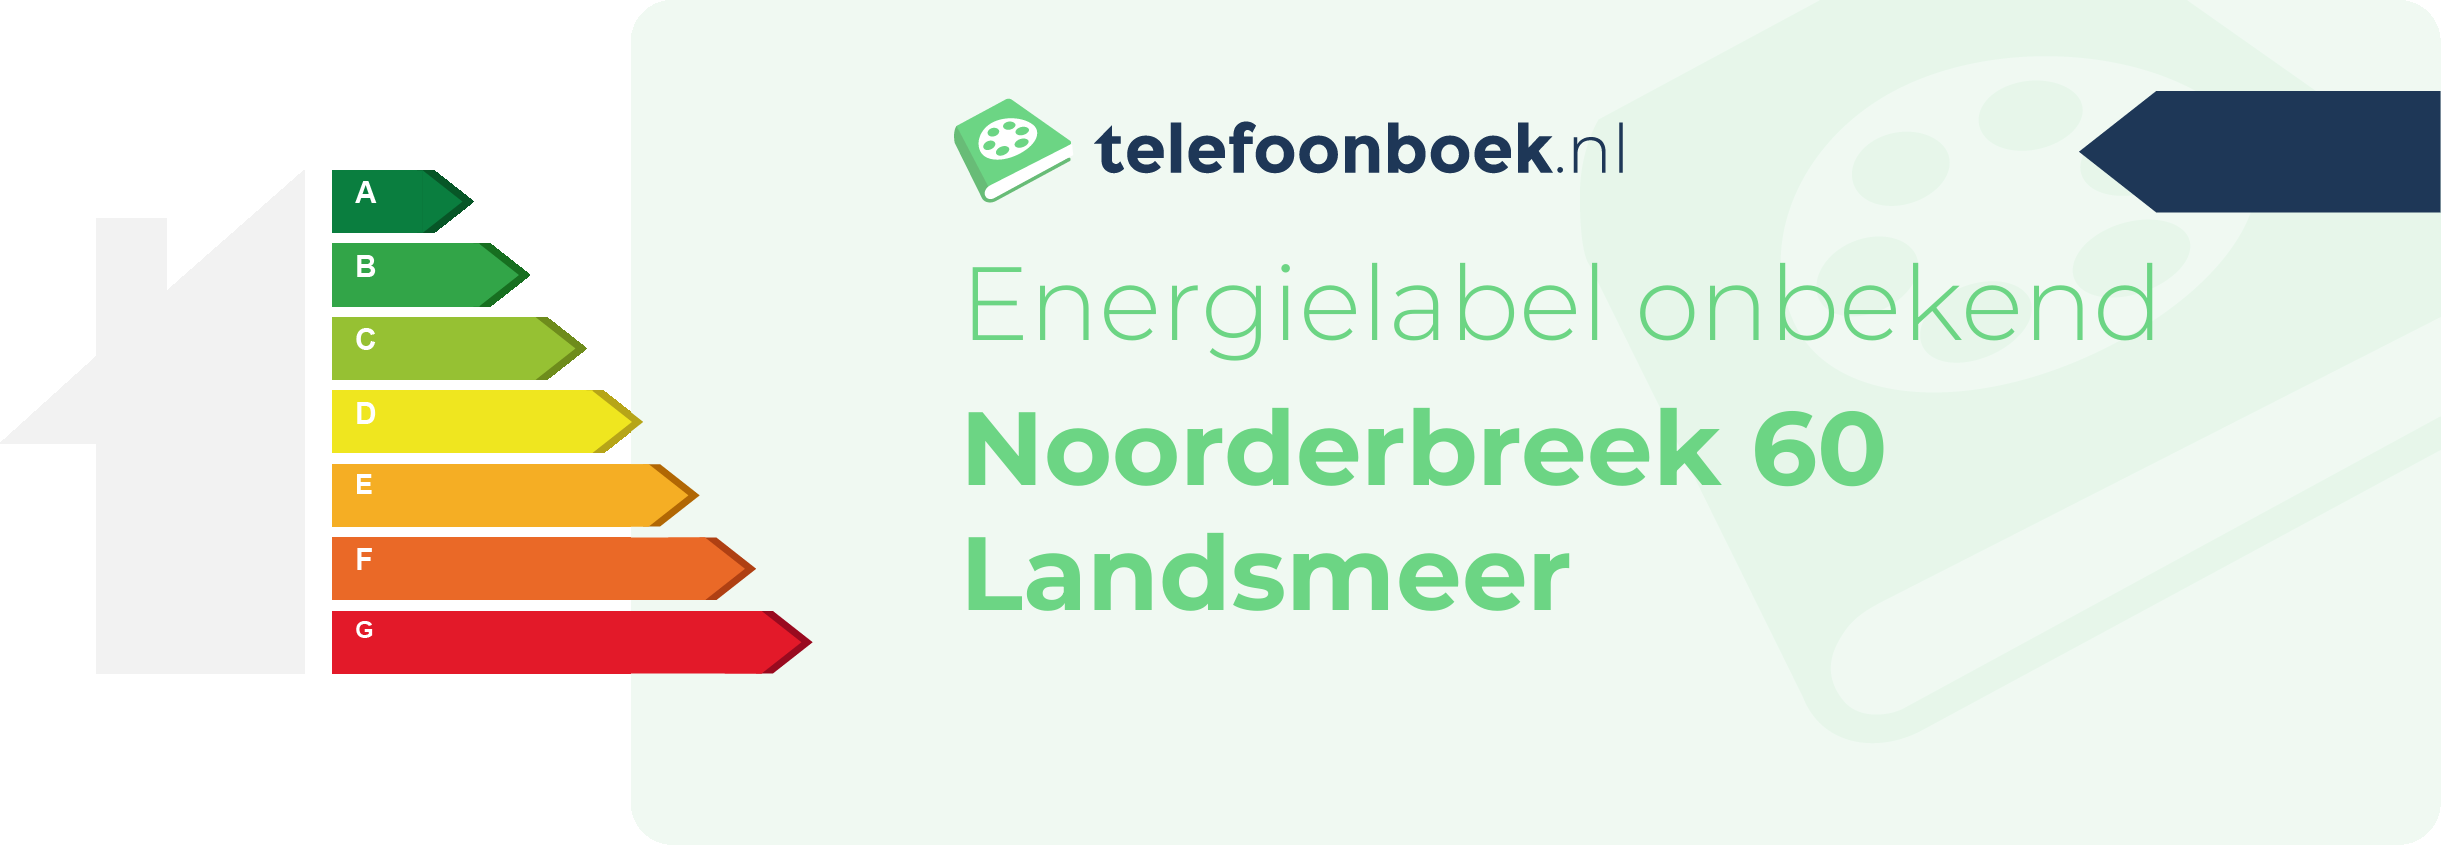 Energielabel Noorderbreek 60 Landsmeer